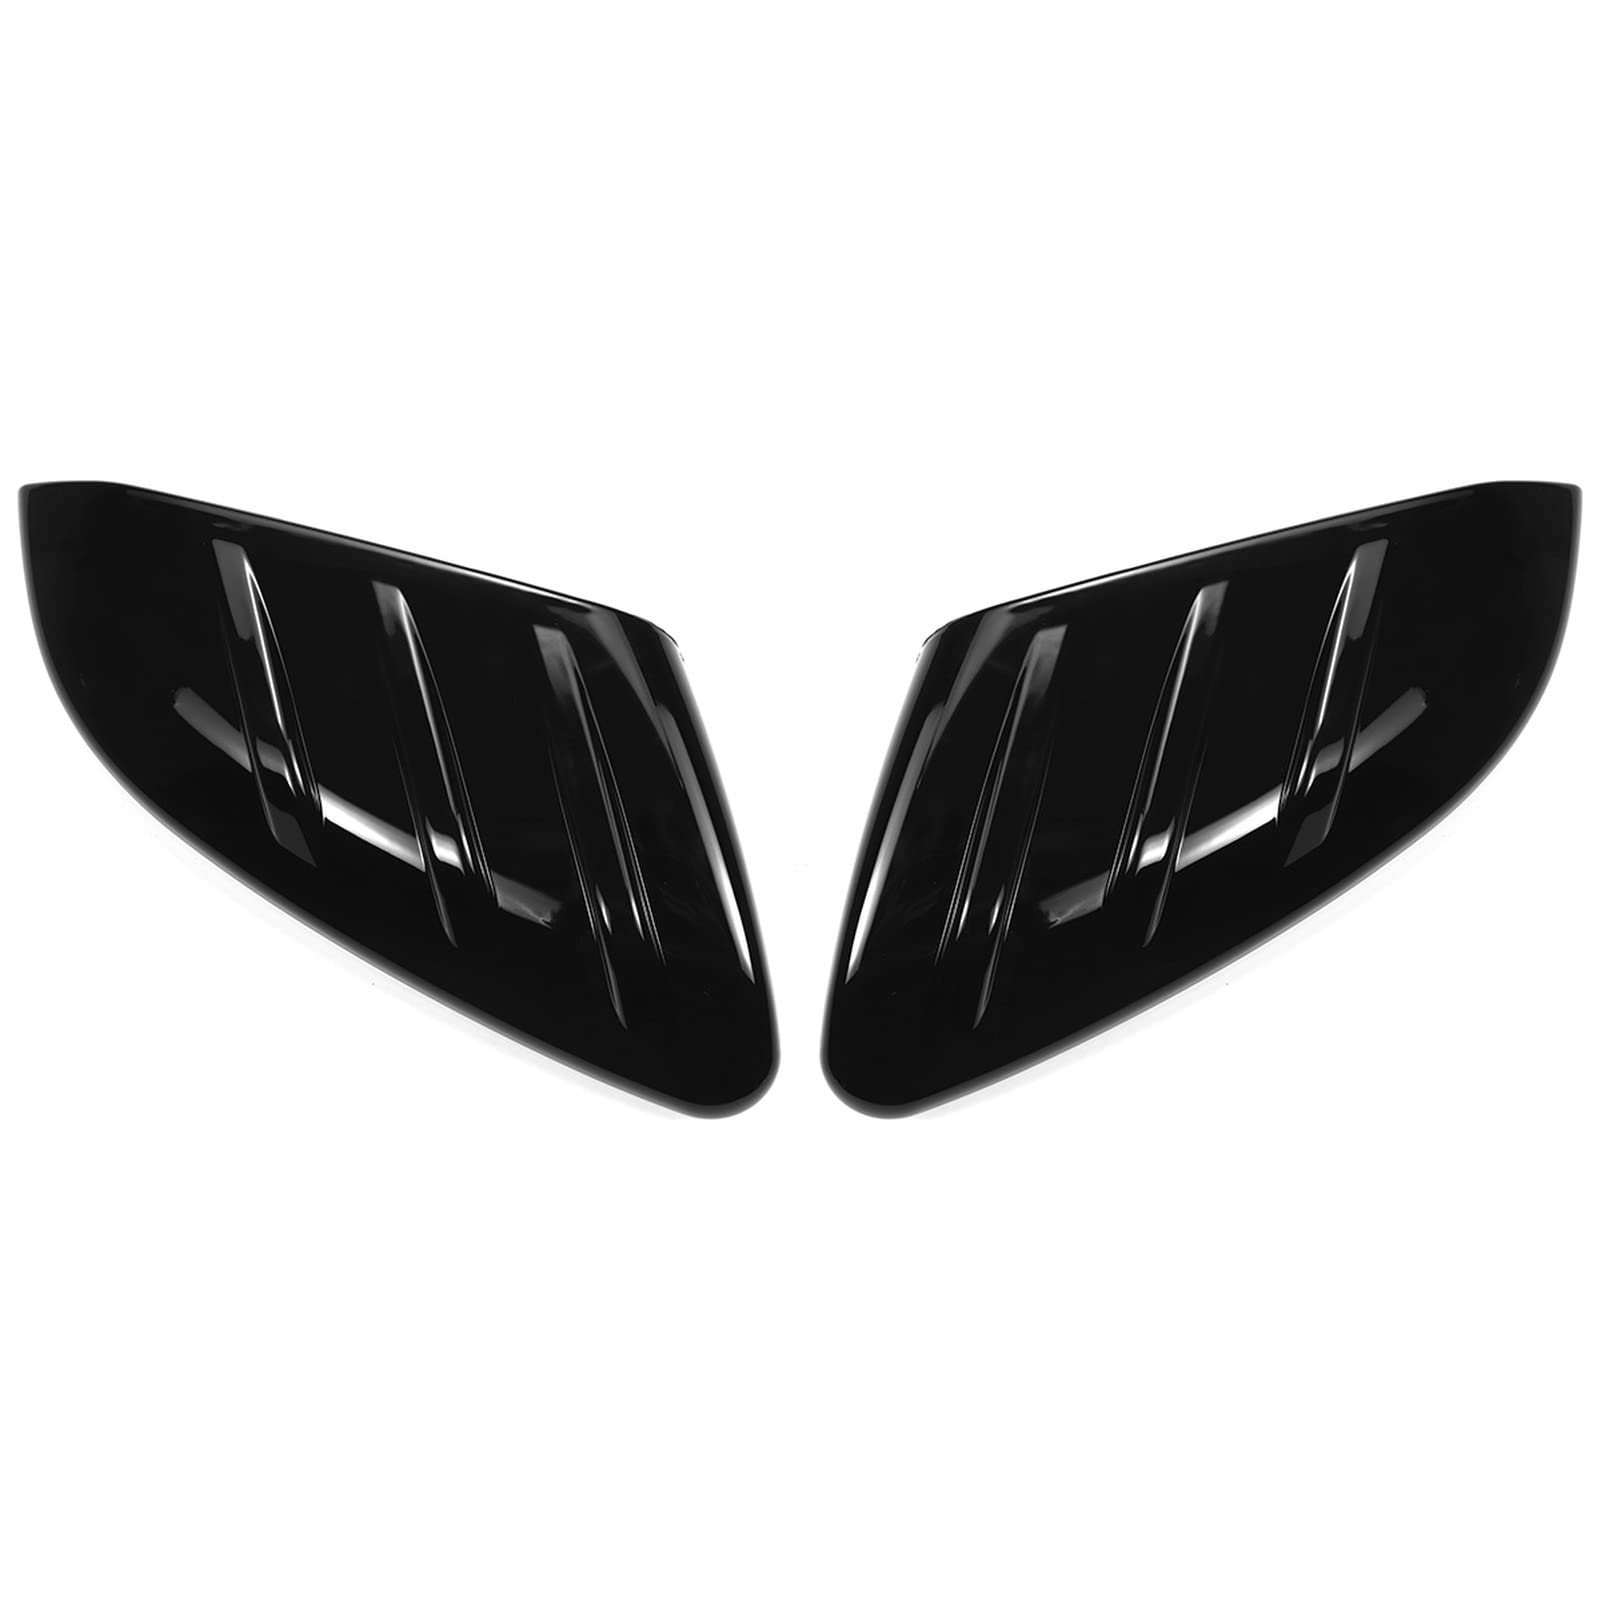 Auto-Seitentür-Rückspiegel-Abdeckkappe für Honda, für Civic FK4 FK7 5DR Hatchback 2016-2021 Rückspiegelabdeckungen